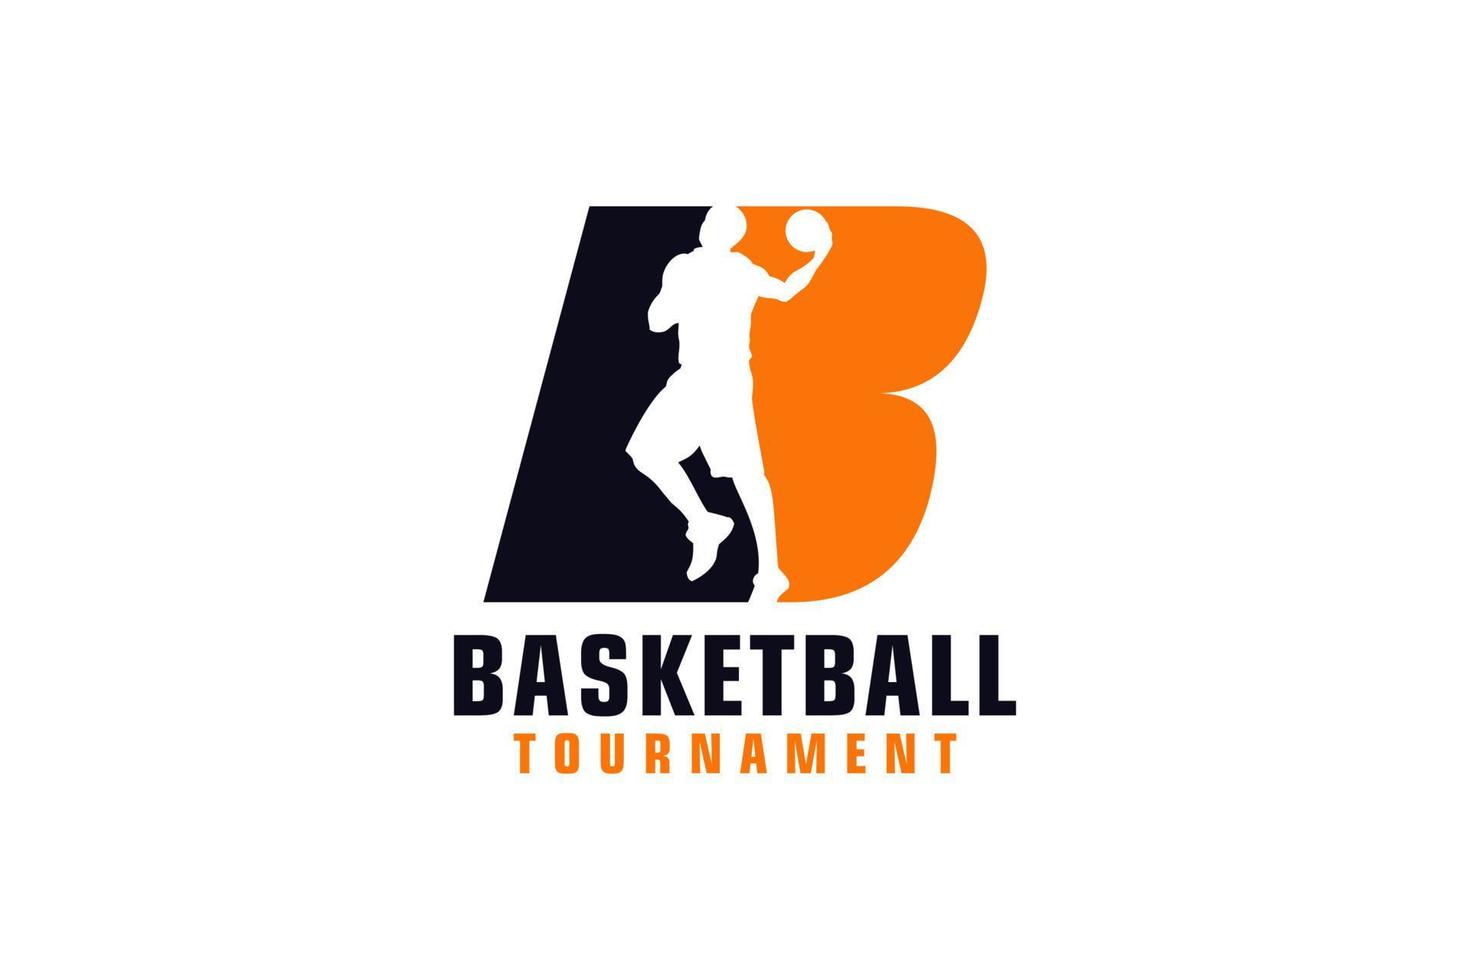 letra b com design de logotipo de basquete. elementos de modelo de design vetorial para equipe esportiva ou identidade corporativa. vetor